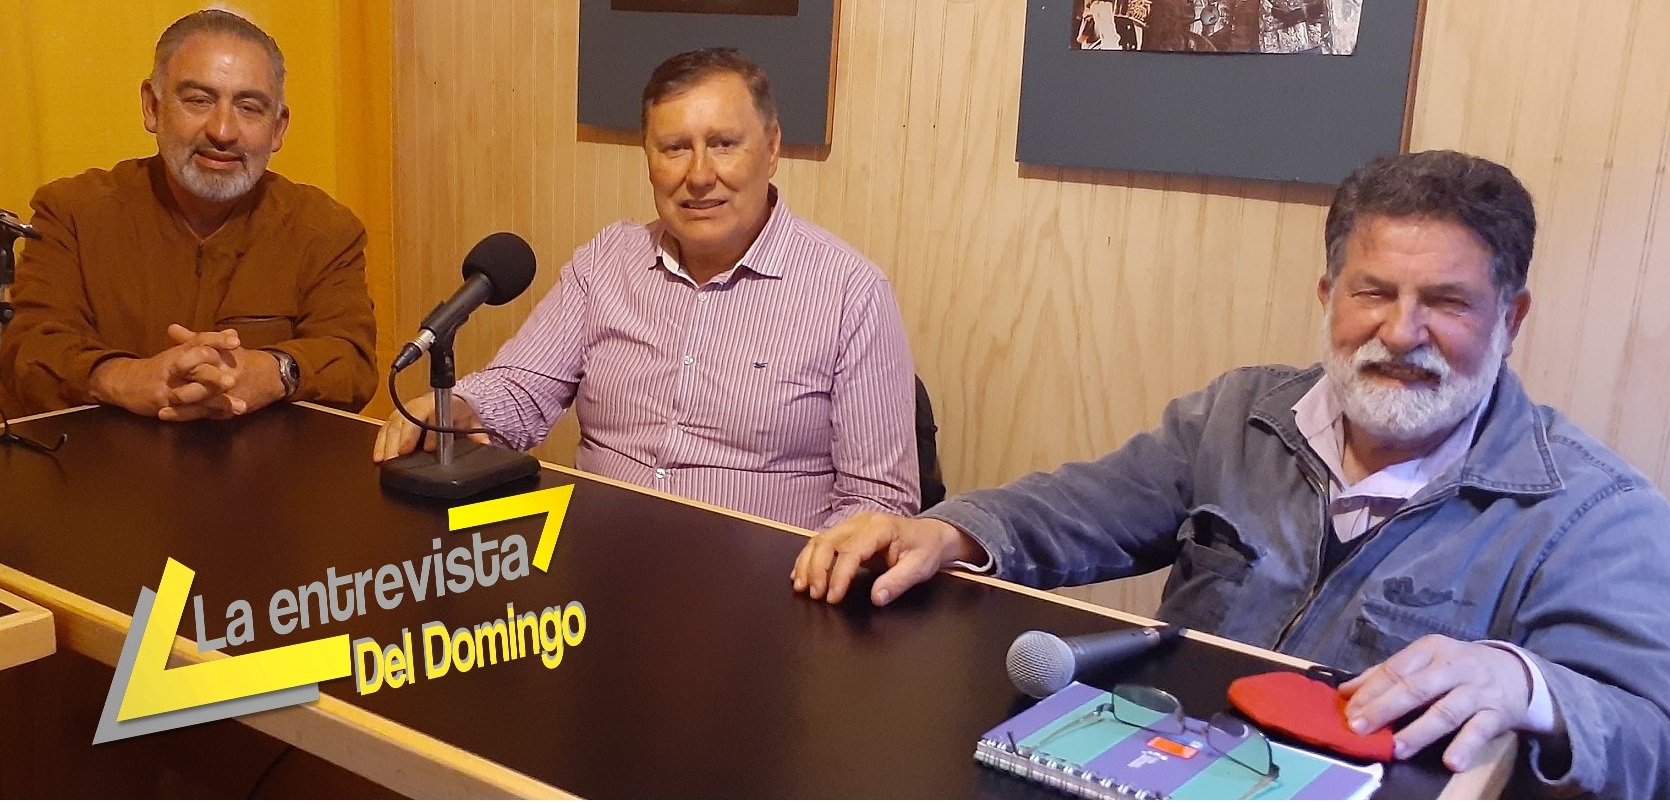 La Entrevista Del Domingo: Luis Cuvertino y Rodrigo Manzano, dos cargos de relevancia territorial